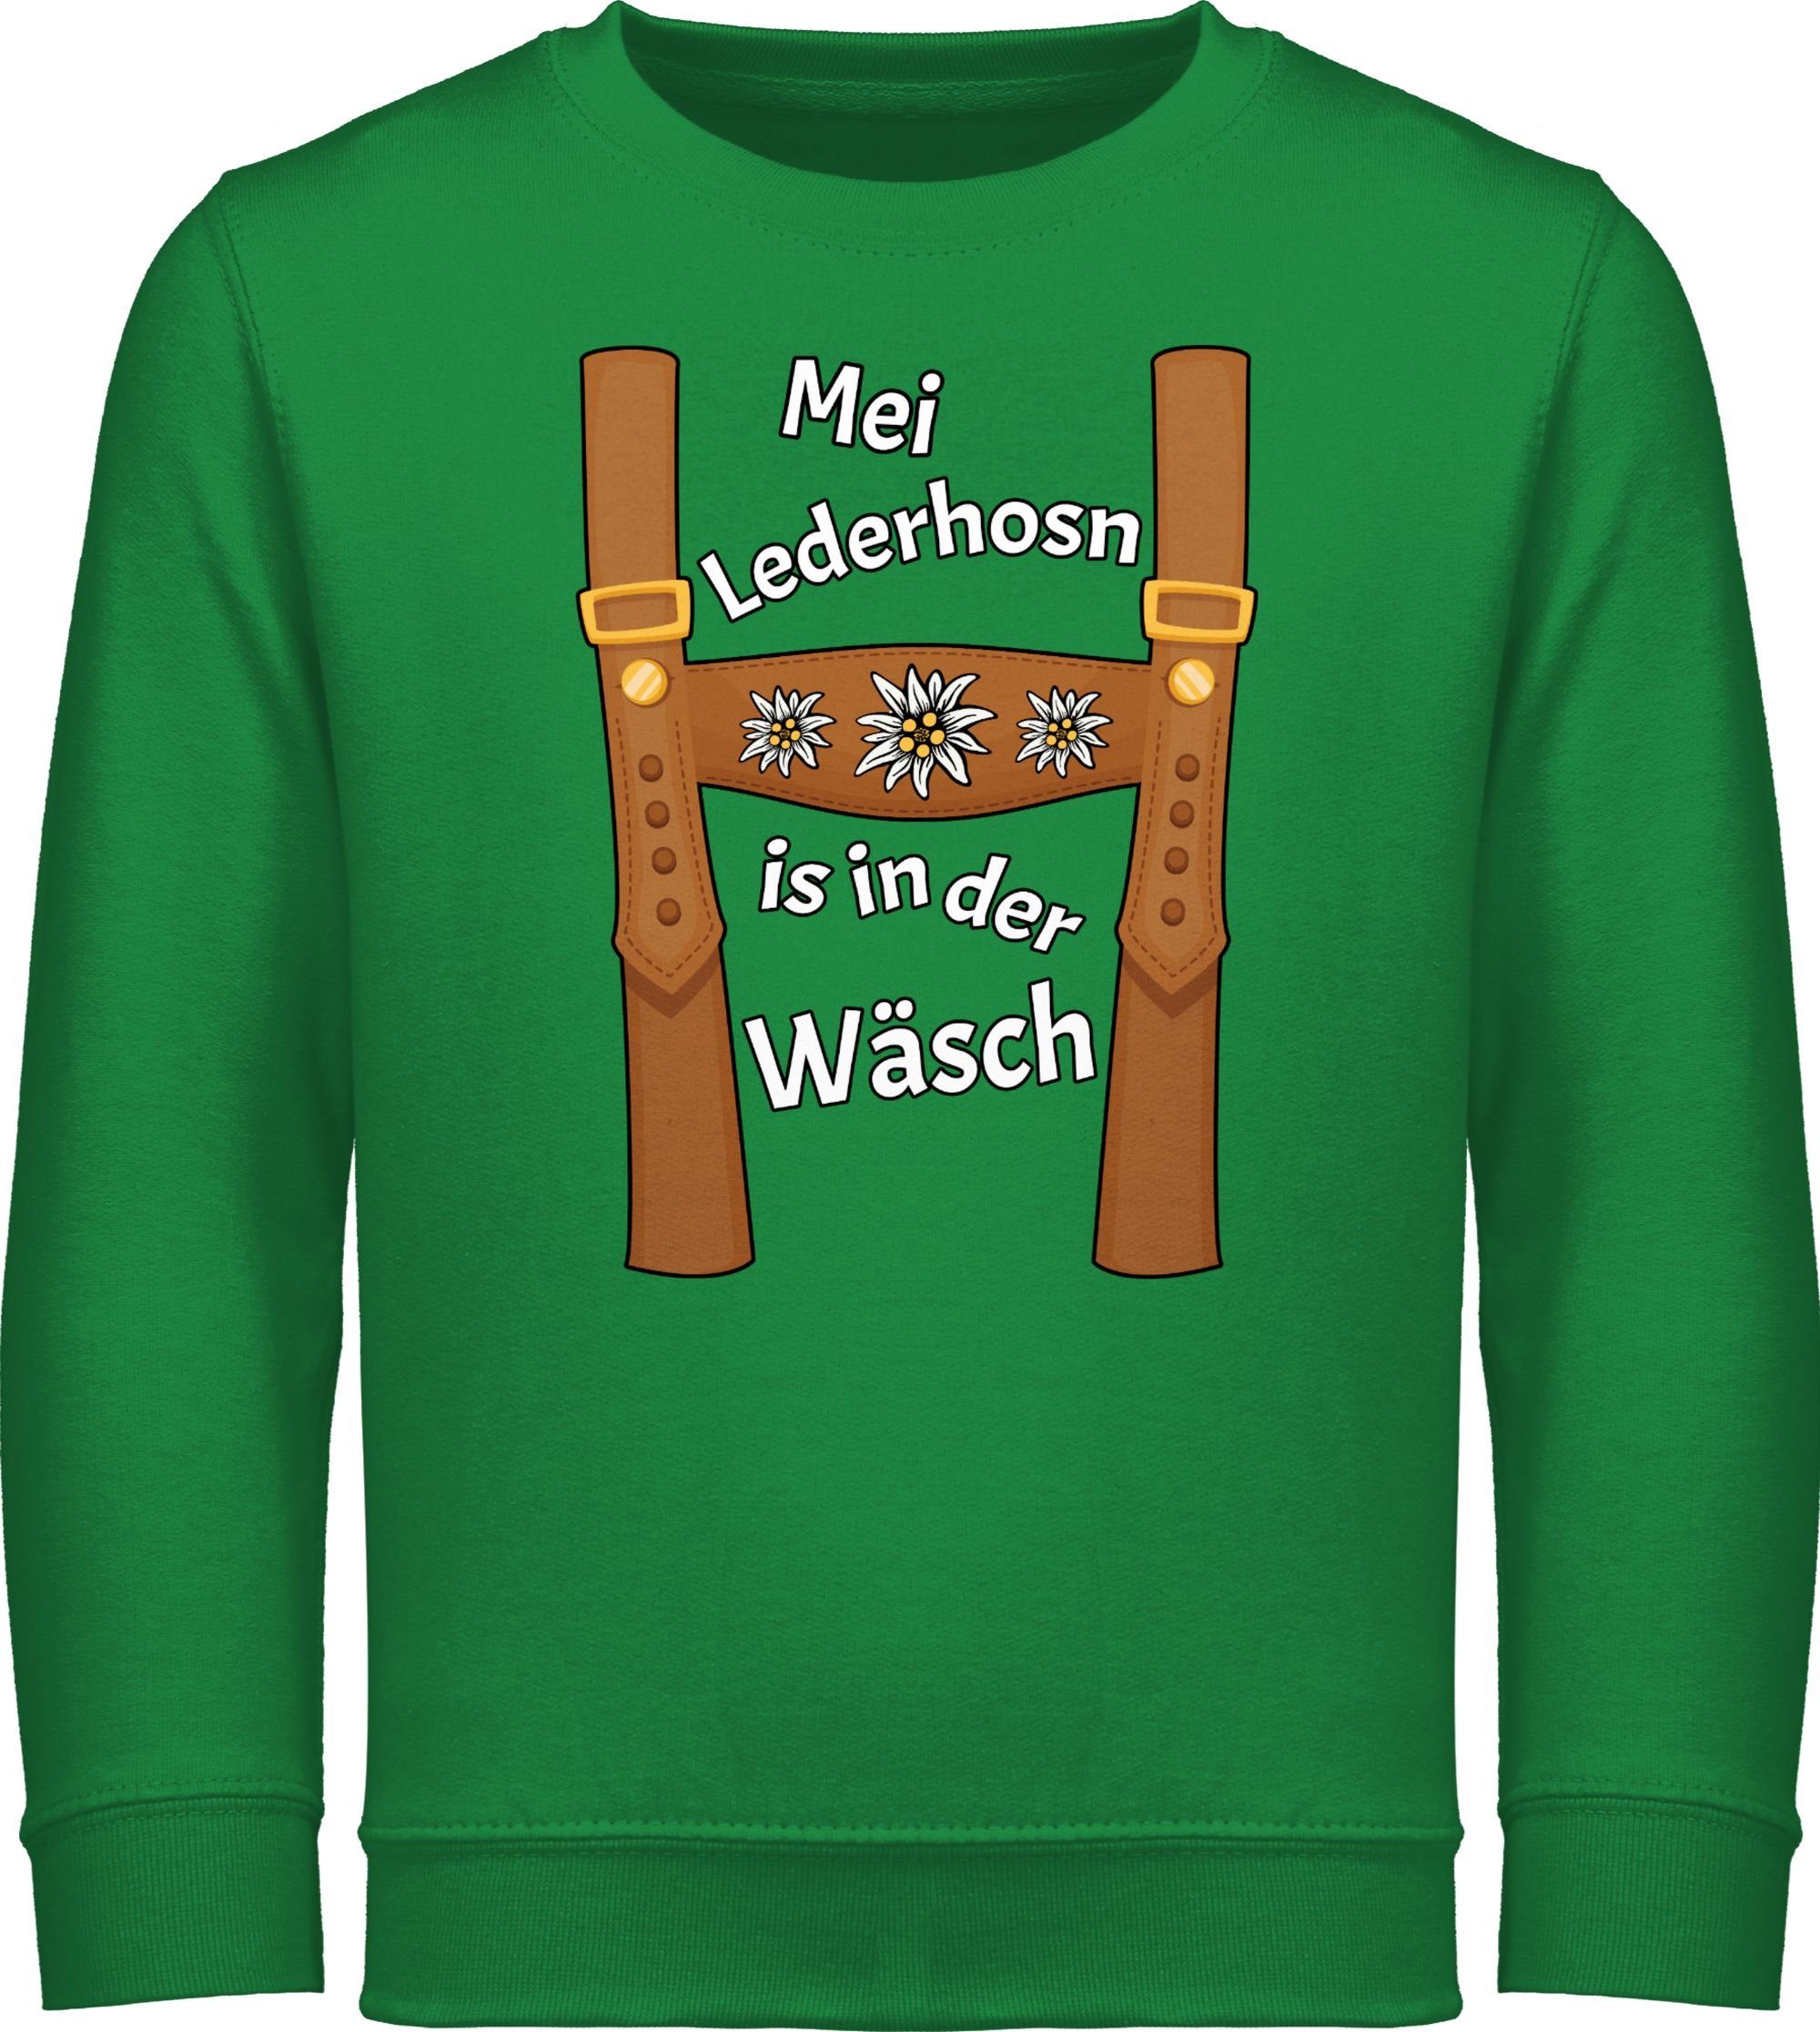 Shirtracer Sweatshirt Meine Lederhose ist der Wäsche Grün in Mode - Outfit für Mei Oktoberfest is in Lederhosn Wäsch da 1 Kinder